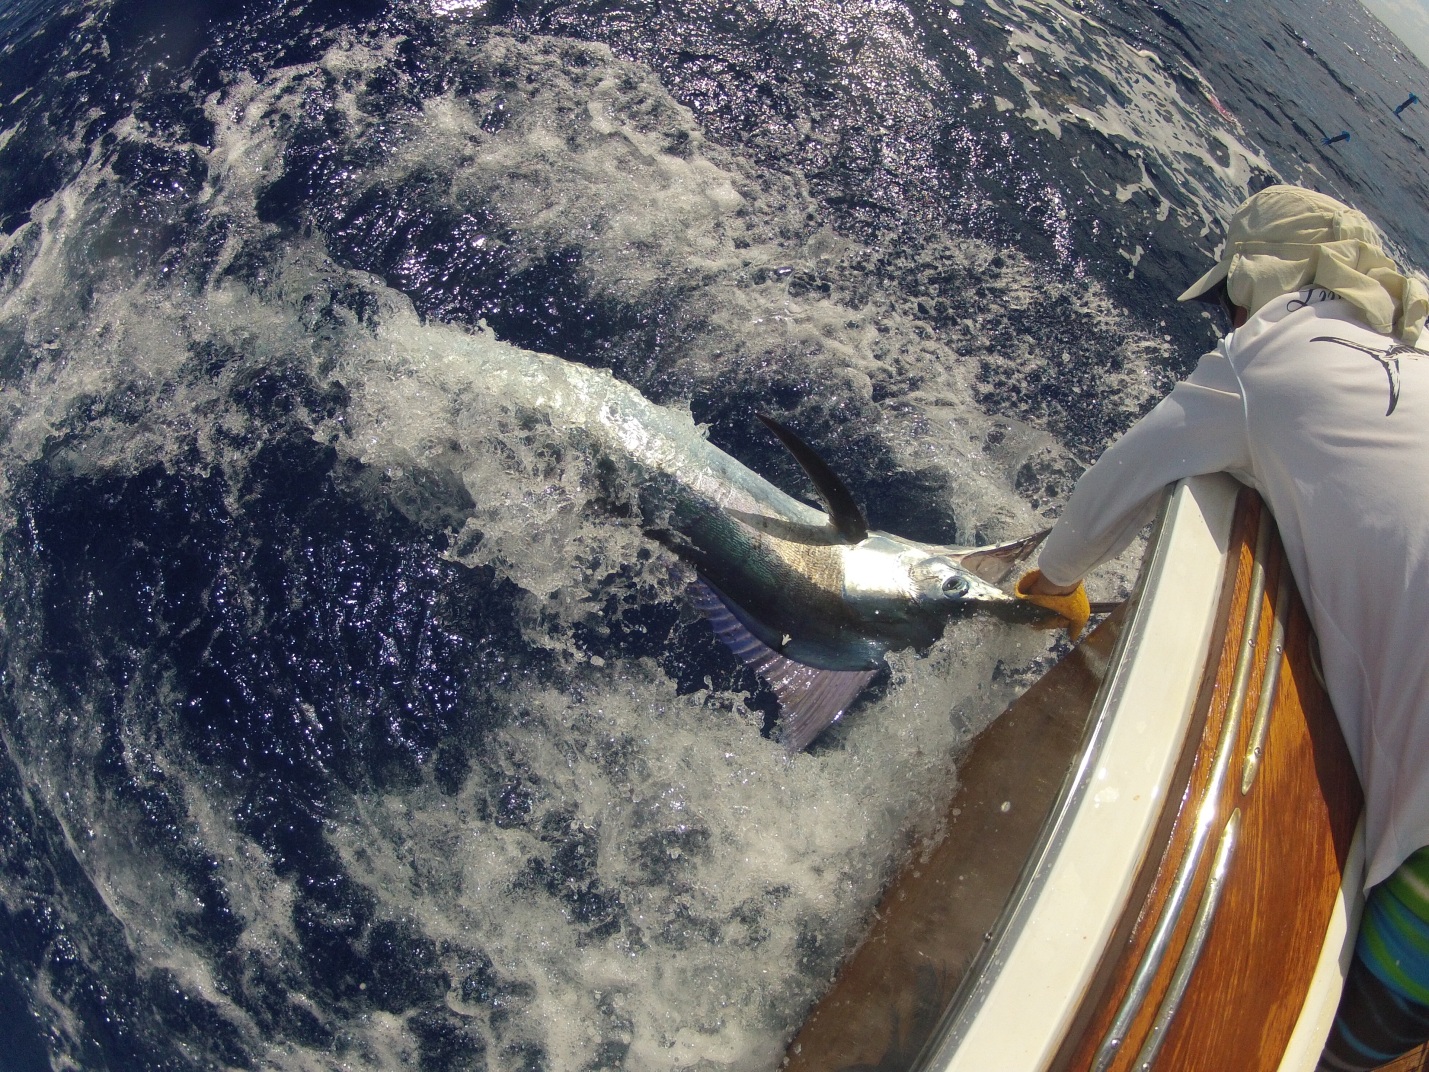 75 pound blue marlin caught by Matthew Ridgway